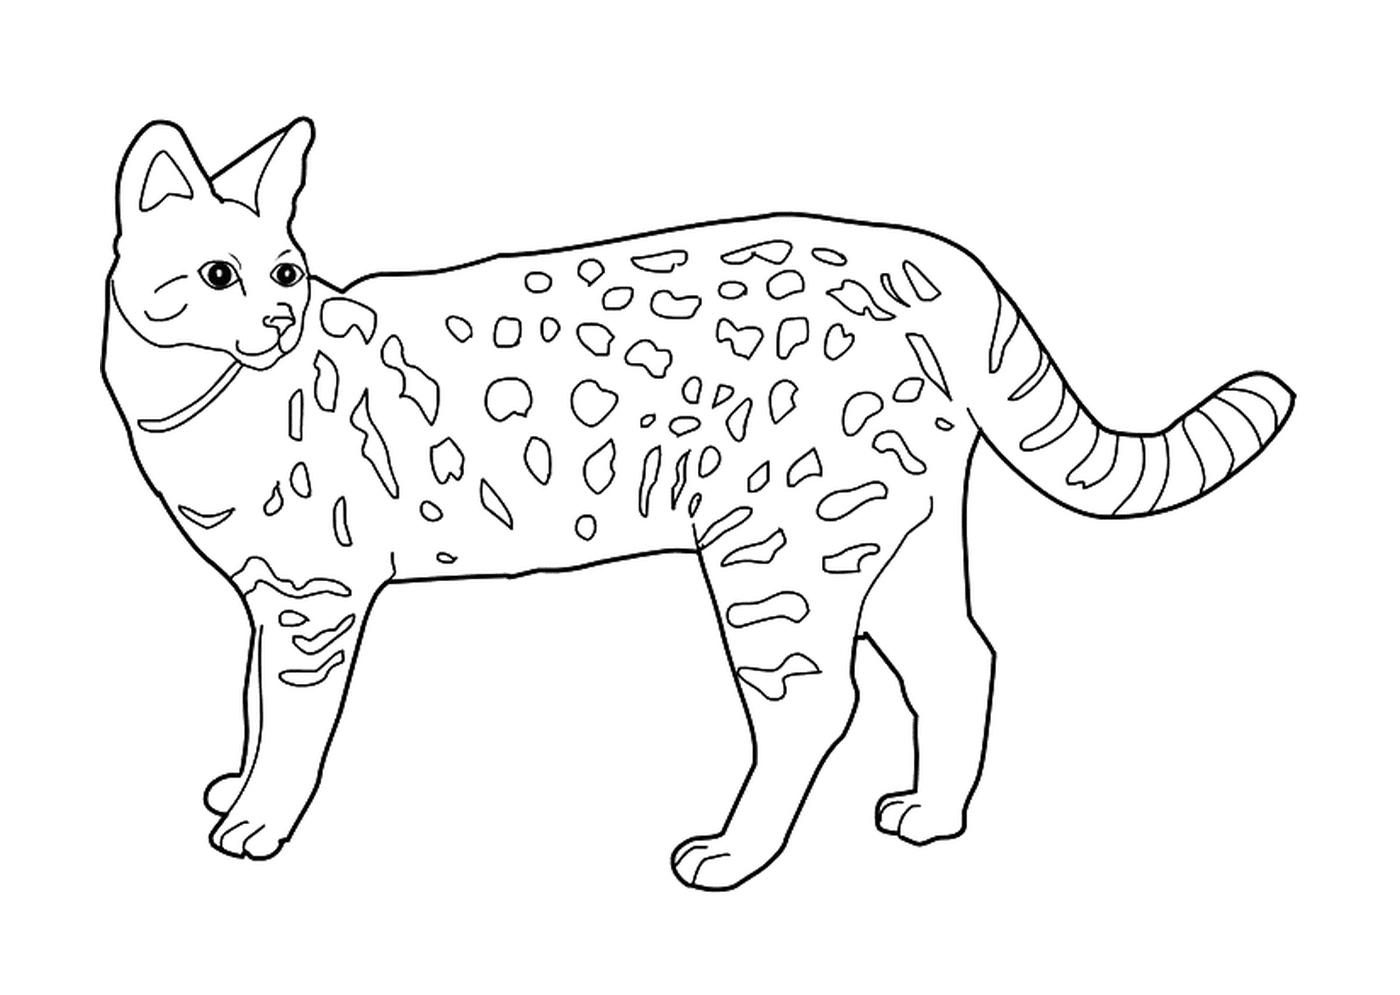  Саванна, одомашненная дикая кошка 